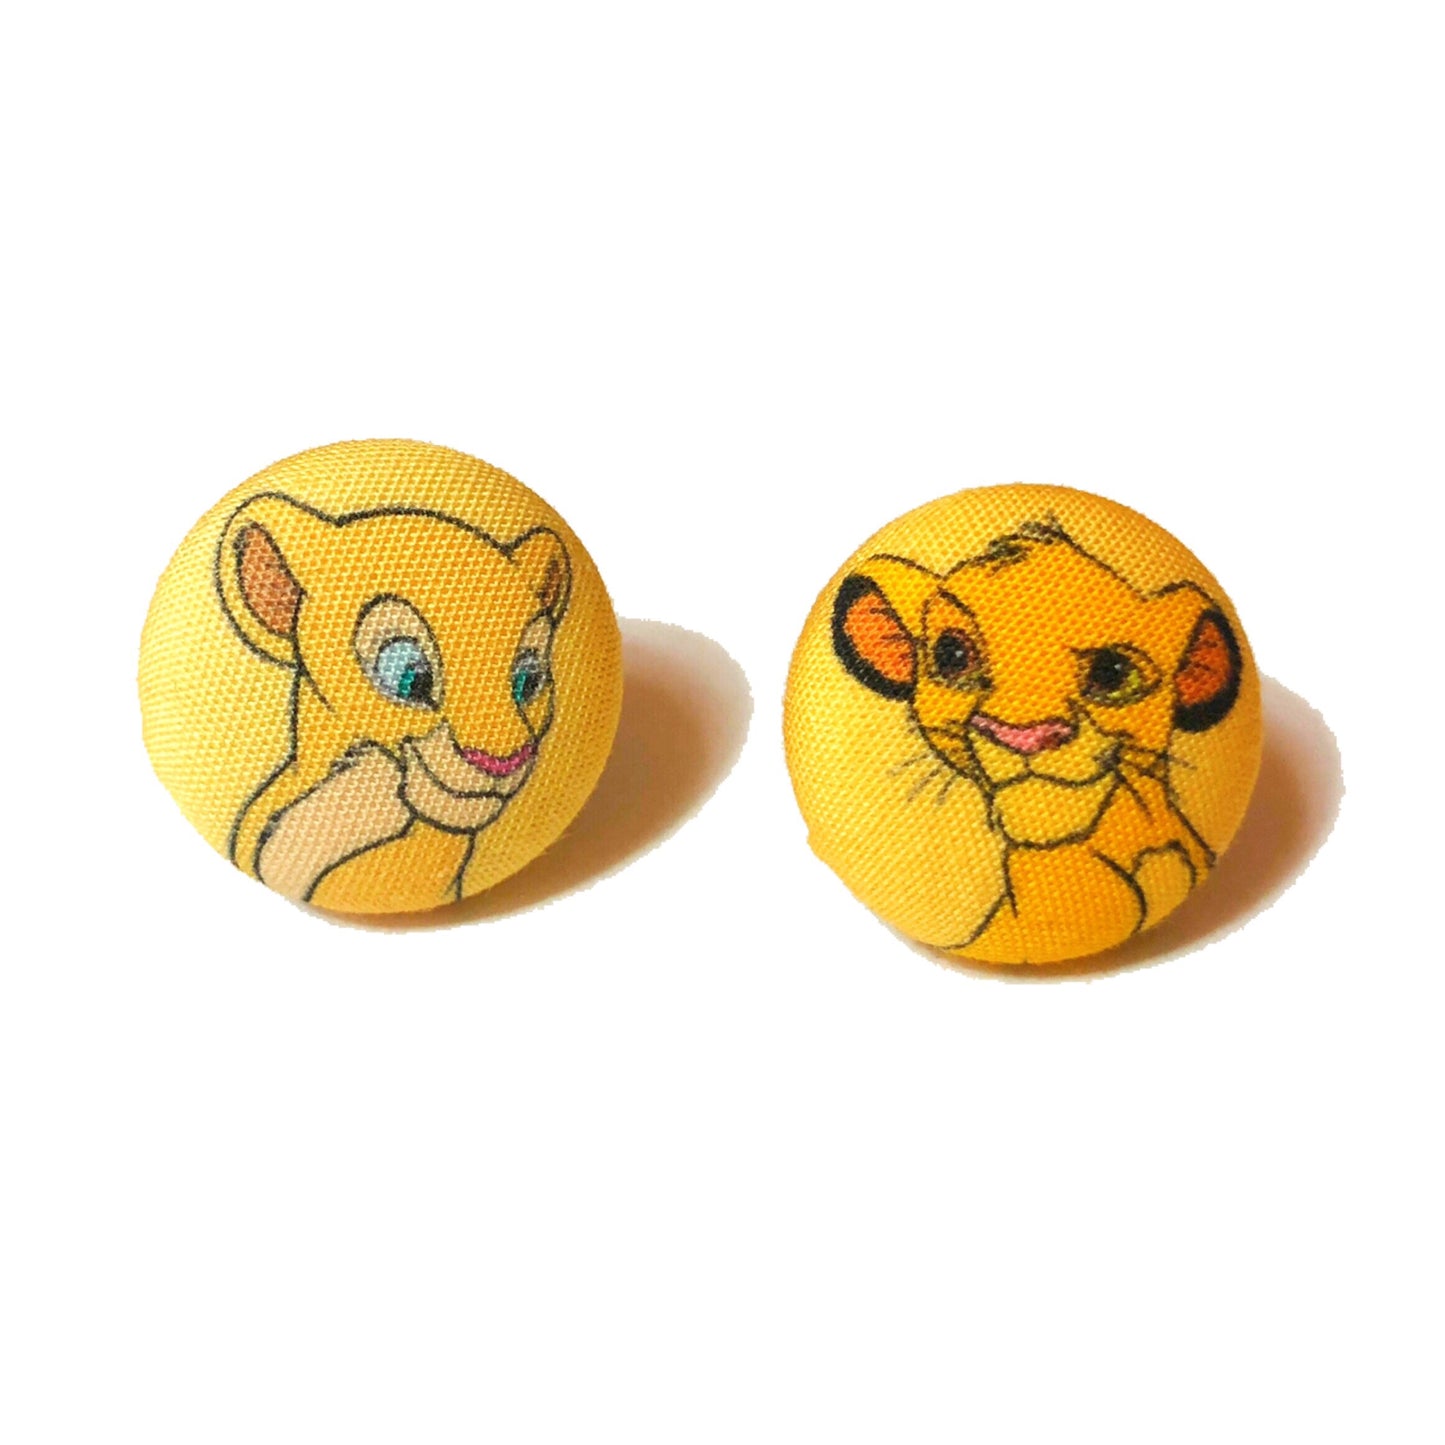 Nala & Simba Young Fabric Button Earrings